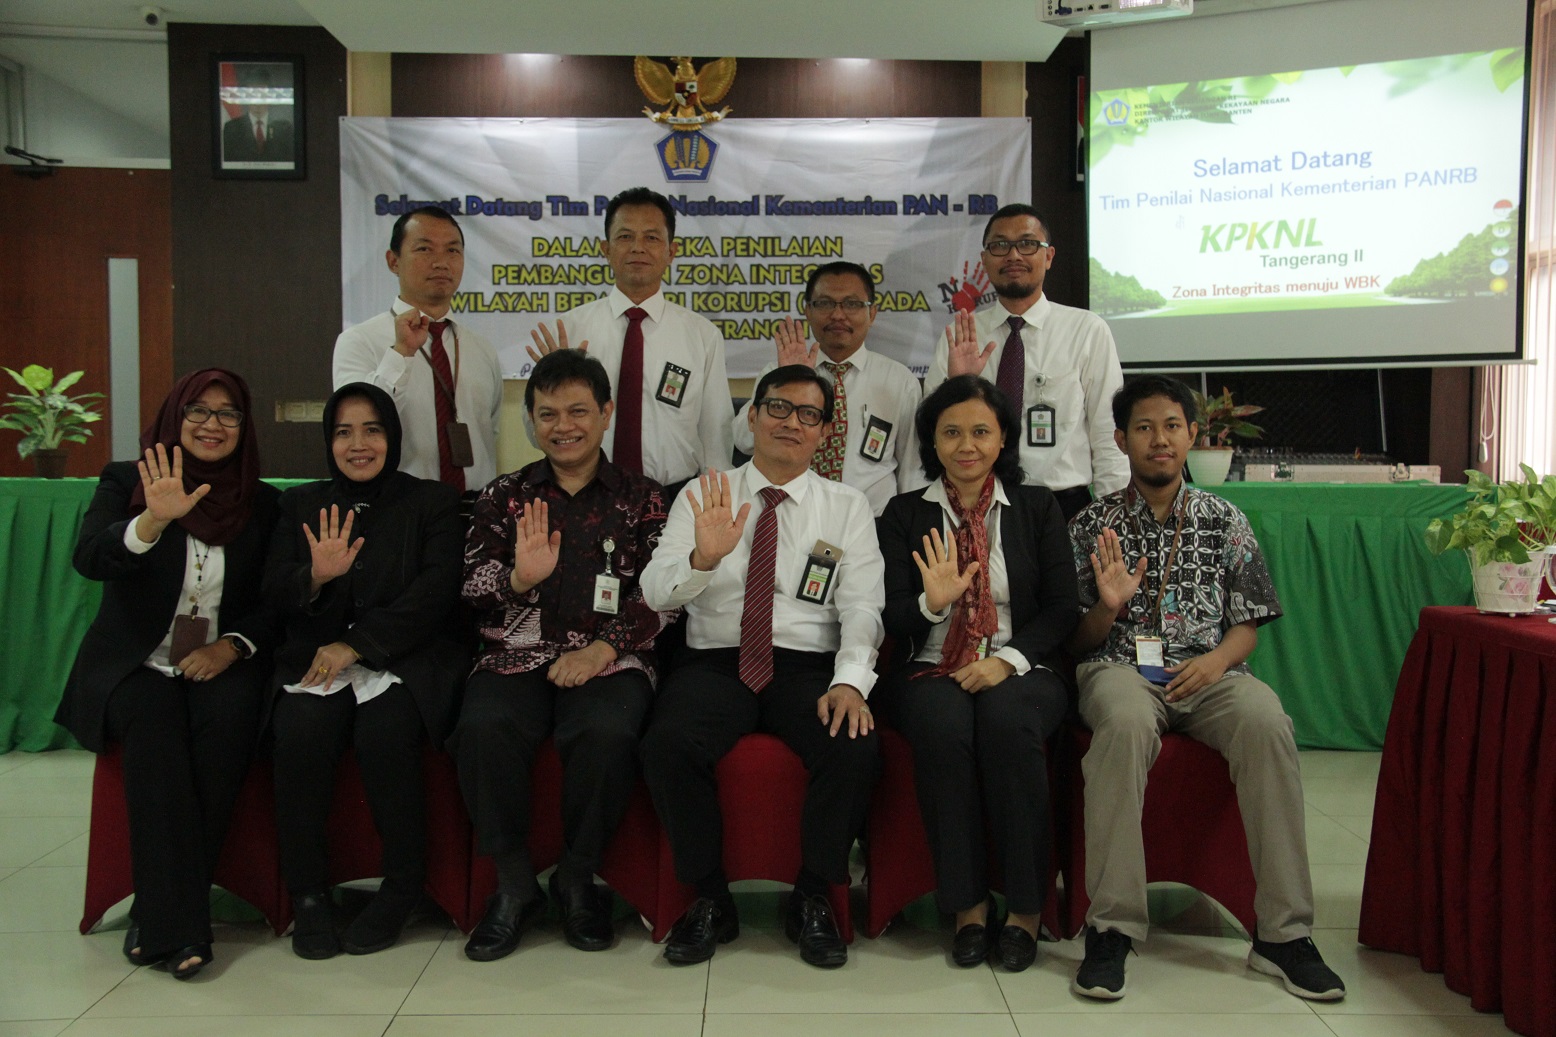 Pembangunan Zona Integritas KPKNL Tangerang II Telah Masuki Tahap Akhir